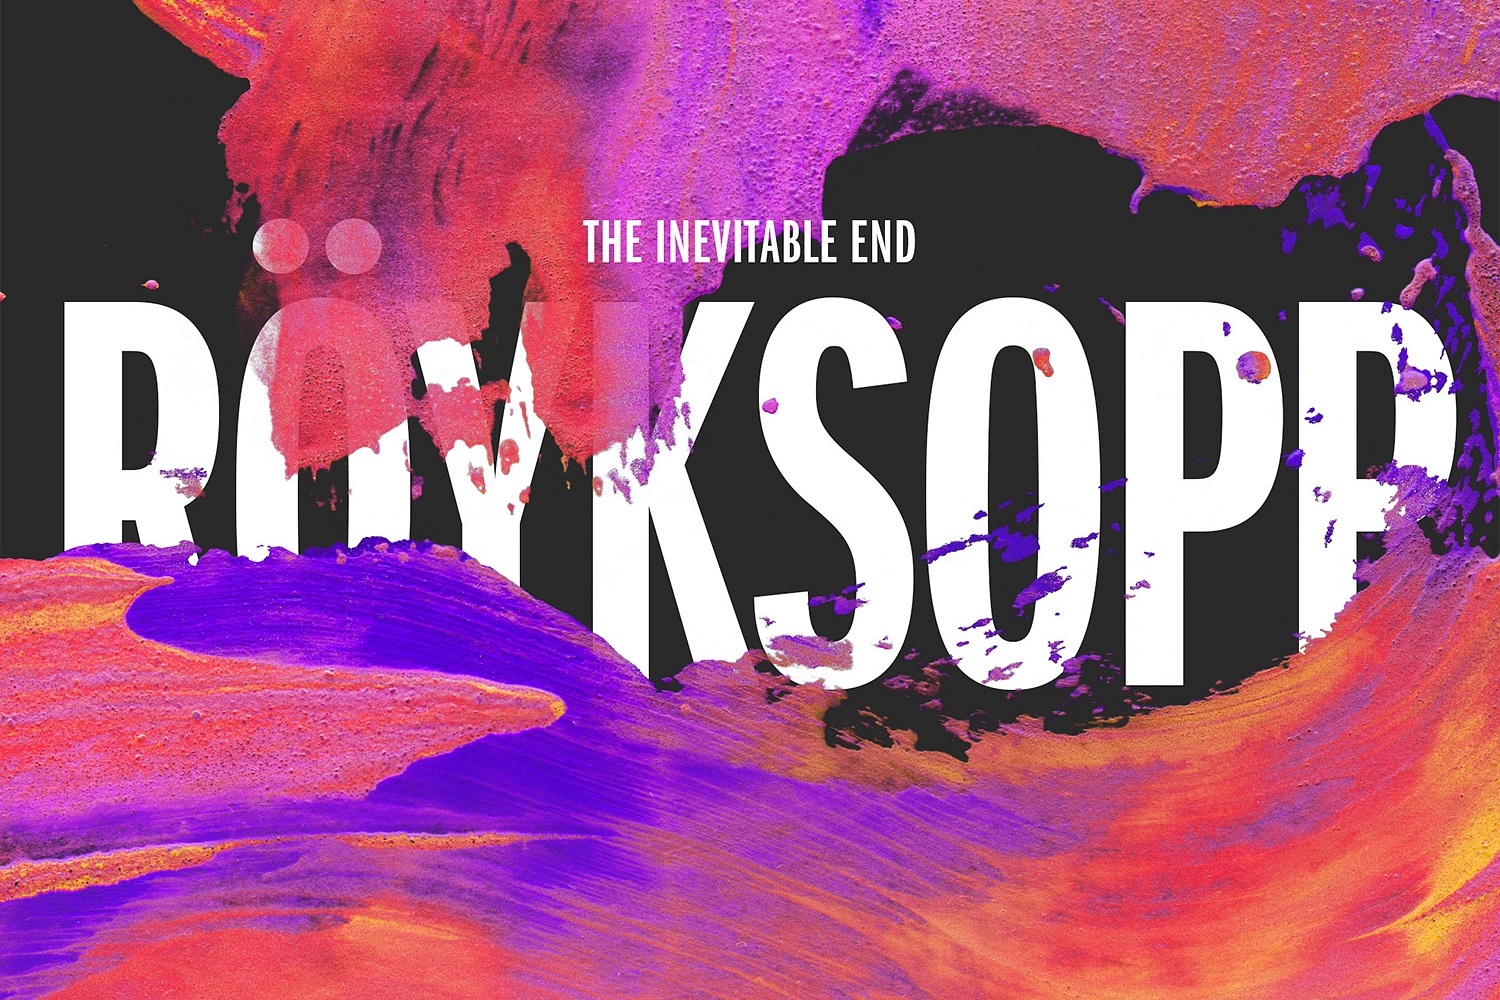 Röyksopp stream final album ‘The Inevitable End’ in full